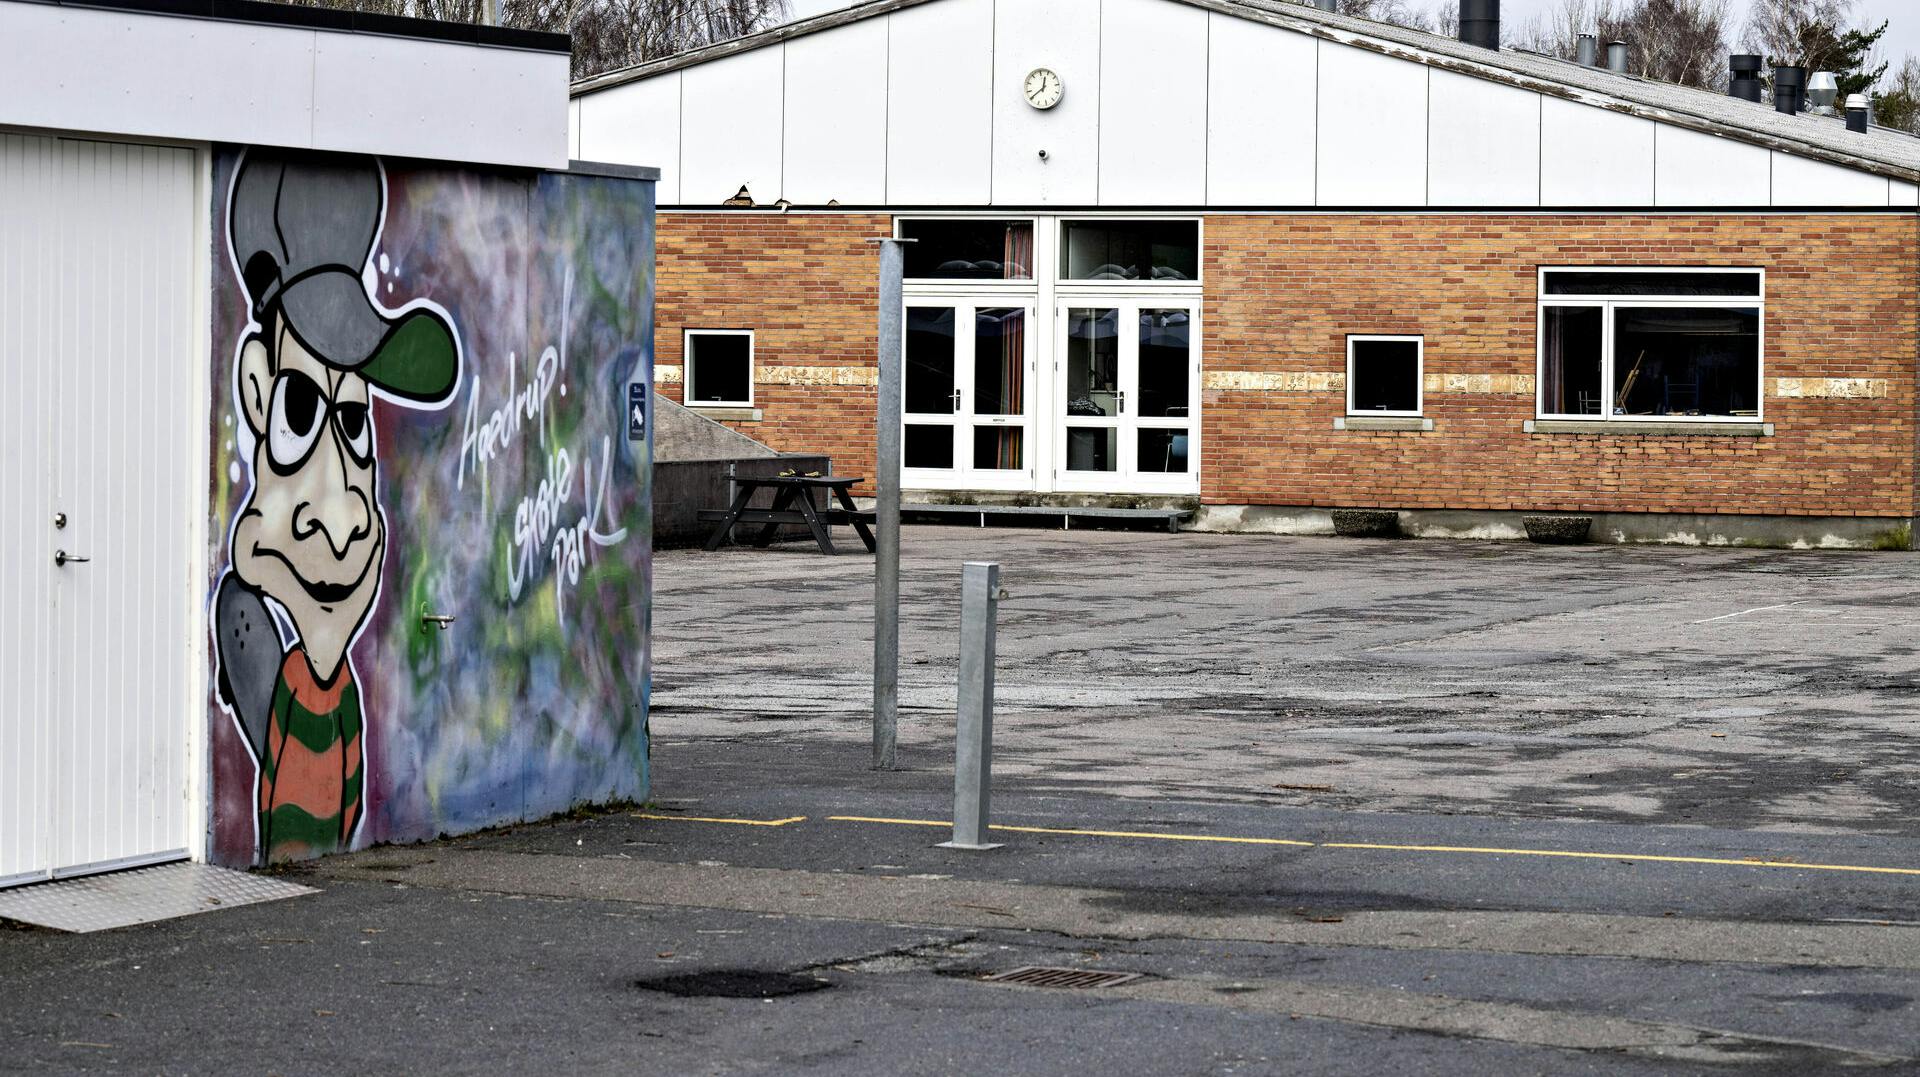 Ledelsen på Agedrup Skole ved Odense kender blandt andet til tre episoder om trusler med kniv og et tilfælde, hvor et barn har fået "11-års tæsk".